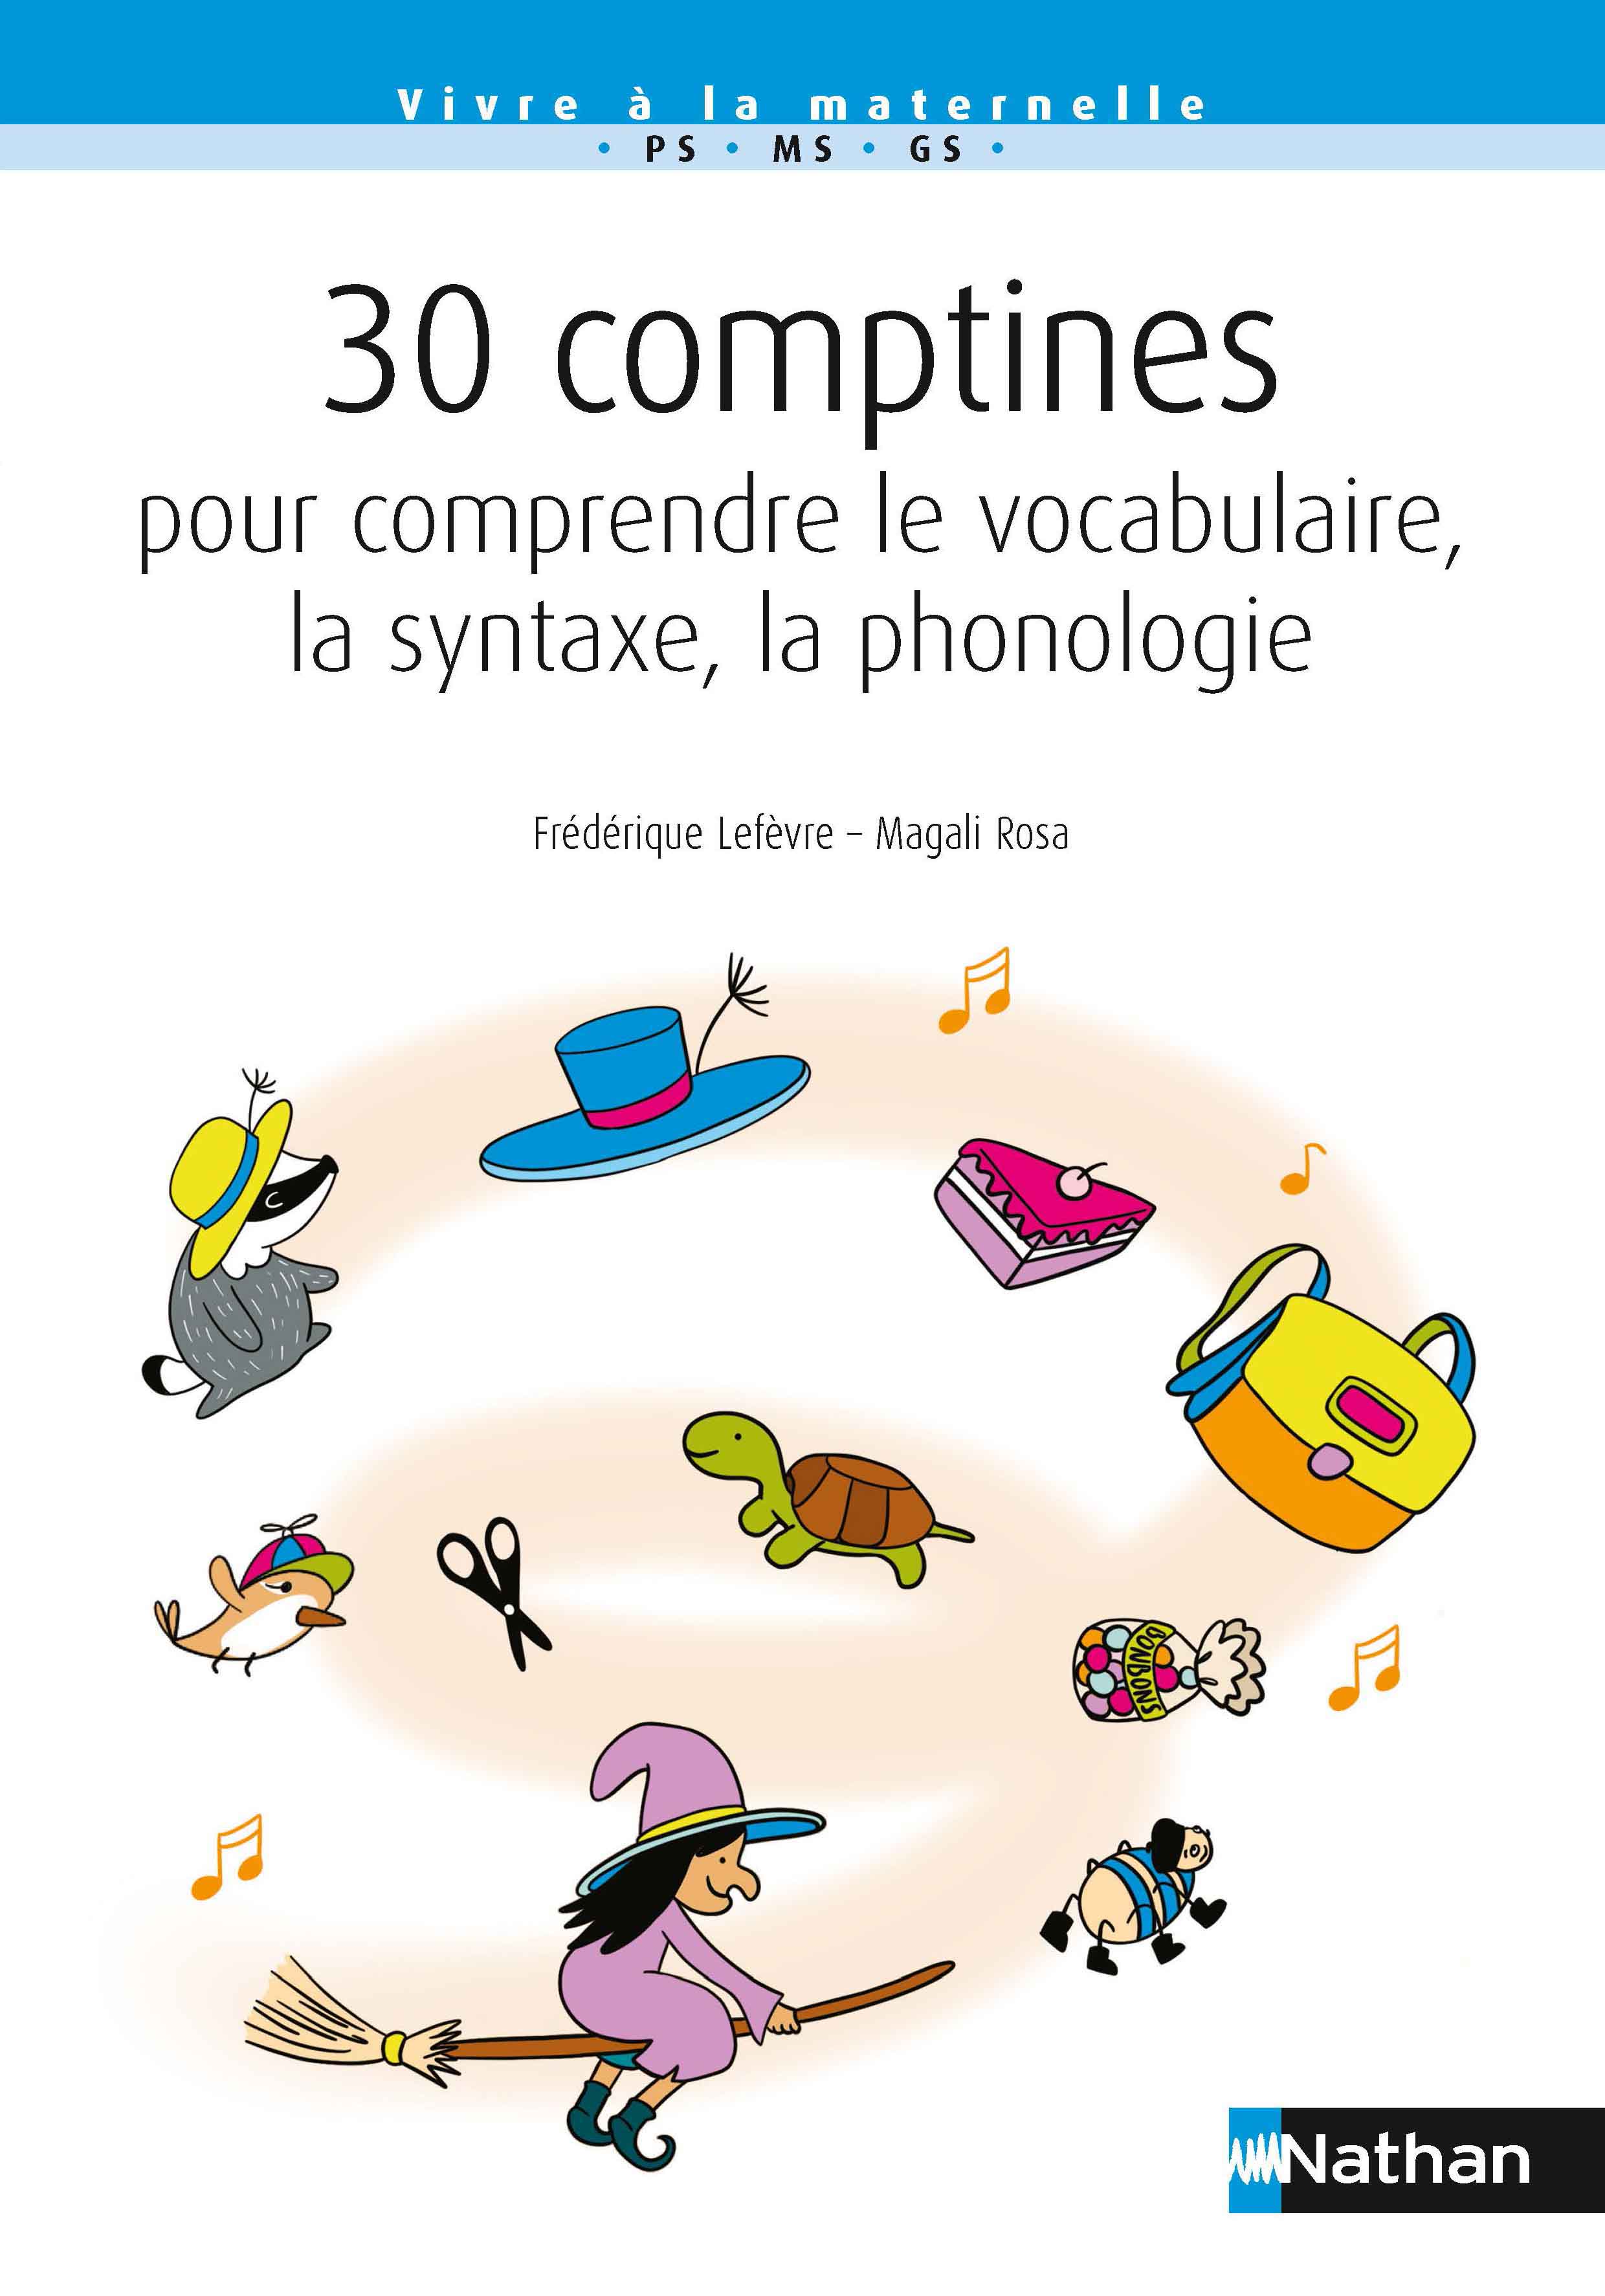 30 comptines pour comprendre le vocabulaire, la syntaxe, la phonologie (PS-MS-GS)